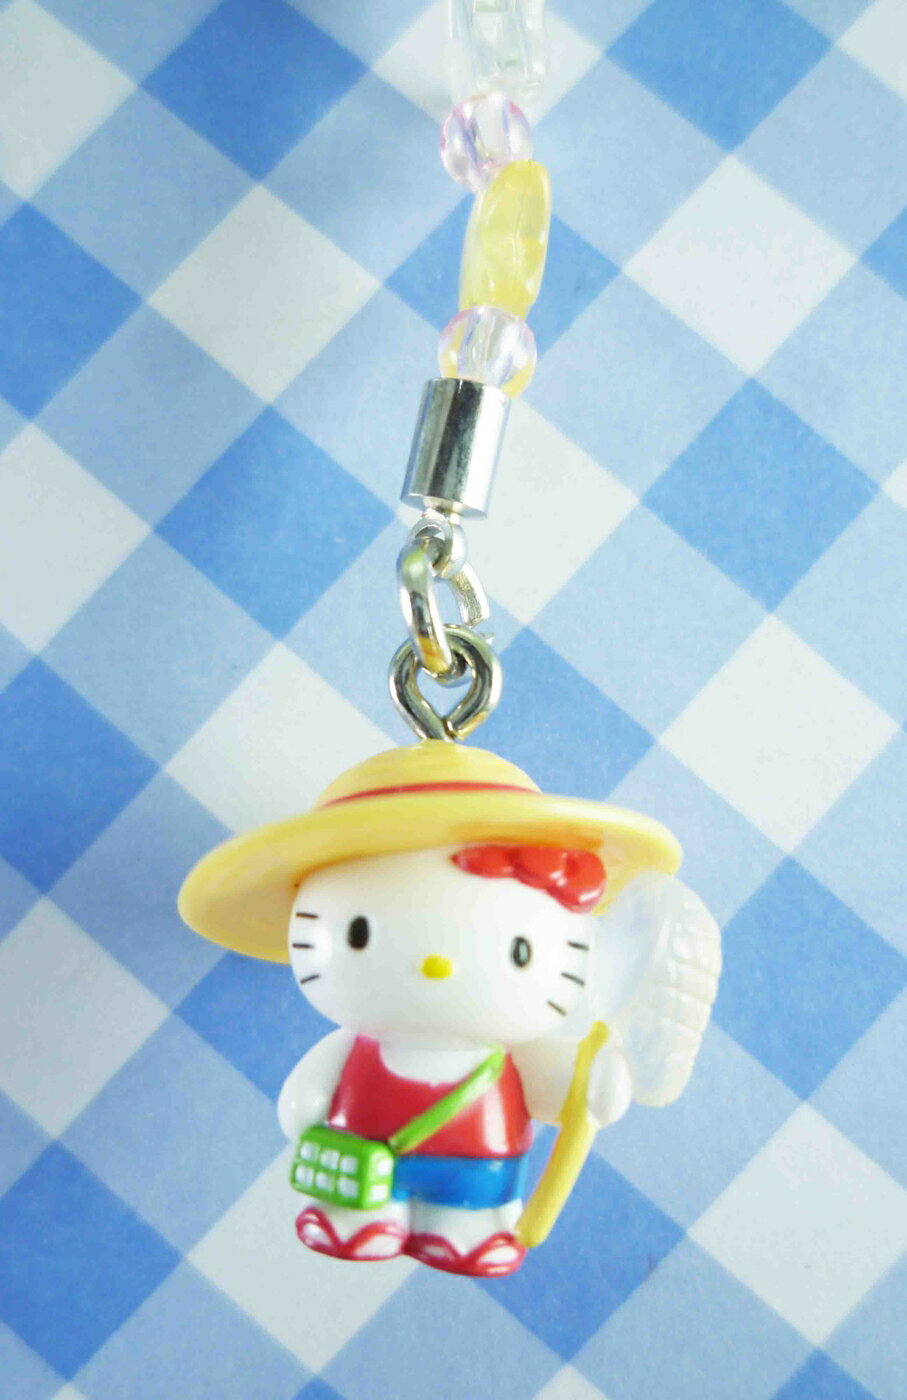 【震撼精品百貨】Hello Kitty 凱蒂貓 限定版手機吊飾-捕蟲 震撼日式精品百貨